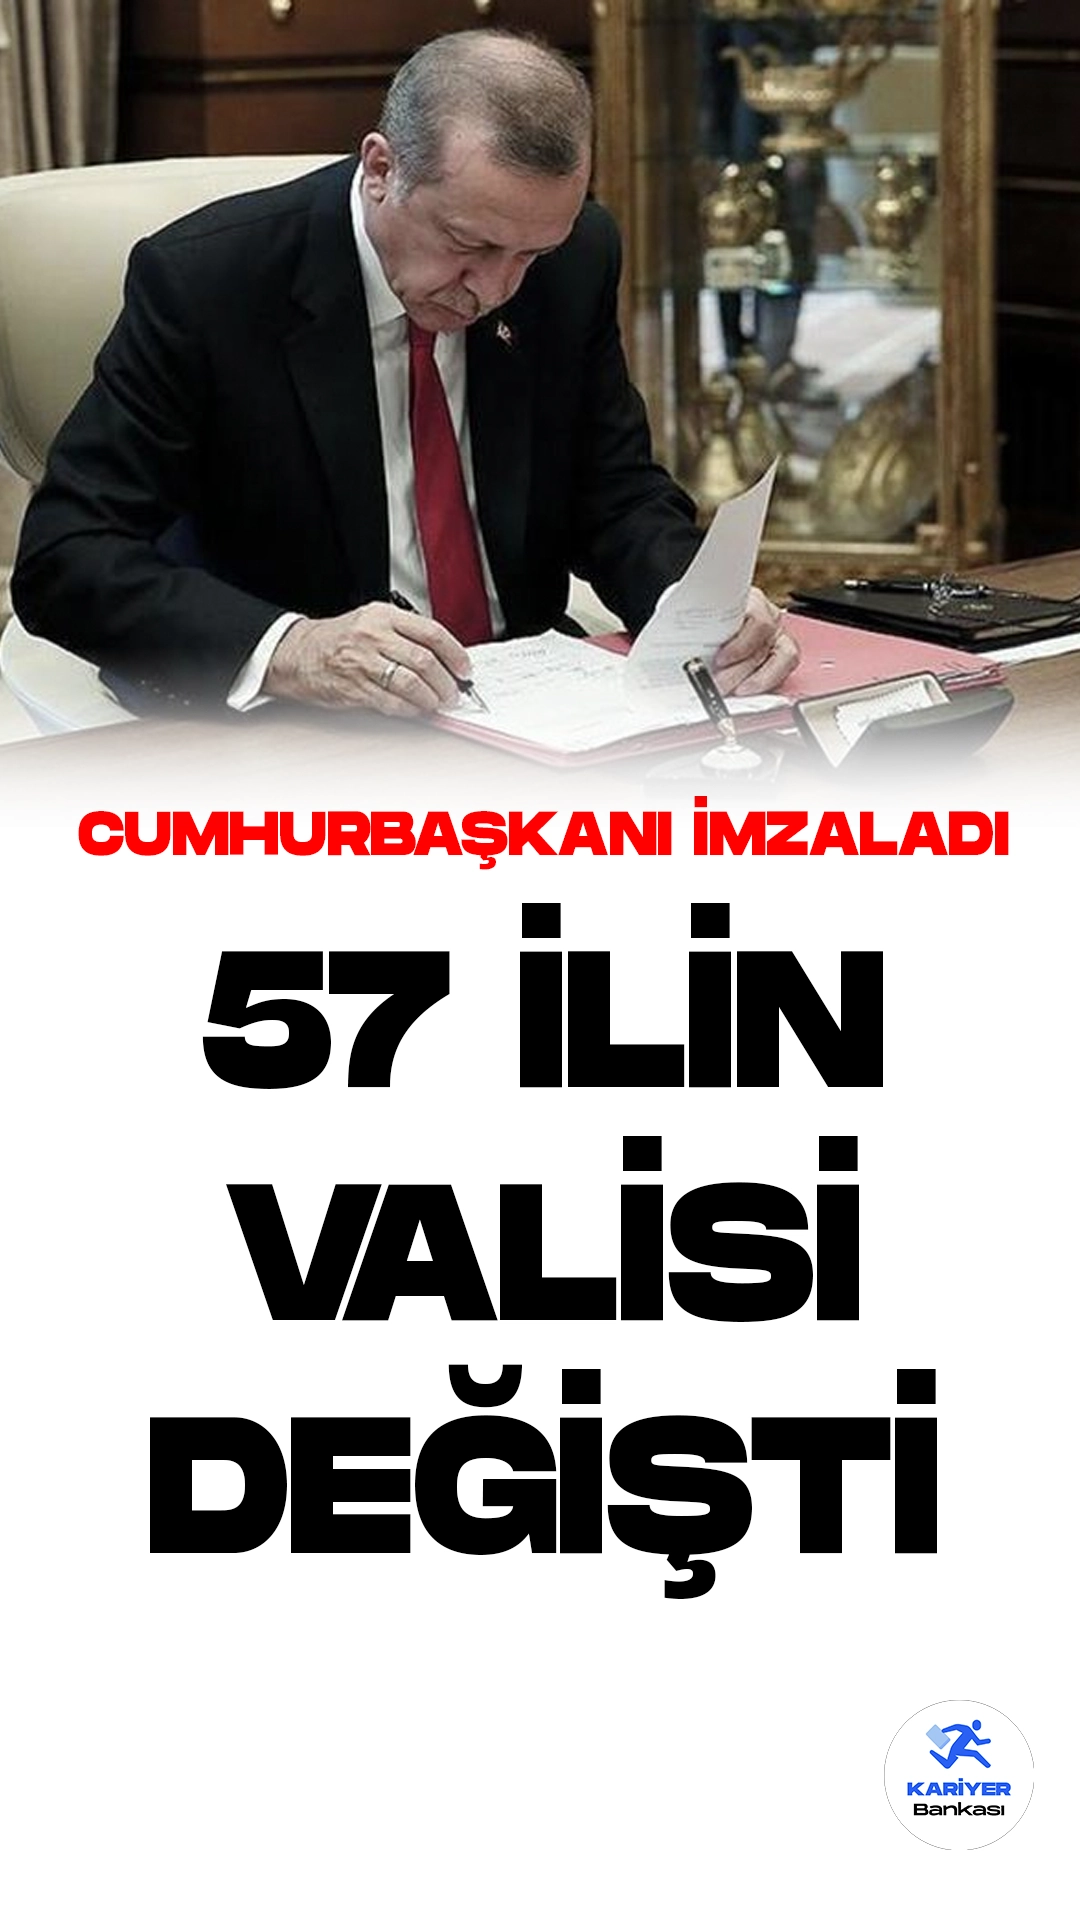 57 İlin Valisi Değişti.Cumhurbaşkanı Recep Tayyip Erdoğan'ın imzasıyla yayımlanan Valiler Kararnamesi, Resmi Gazete'de yer aldı. Kararnamelerle birlikte toplam 57 ile yeni vali ataması yapıldı.